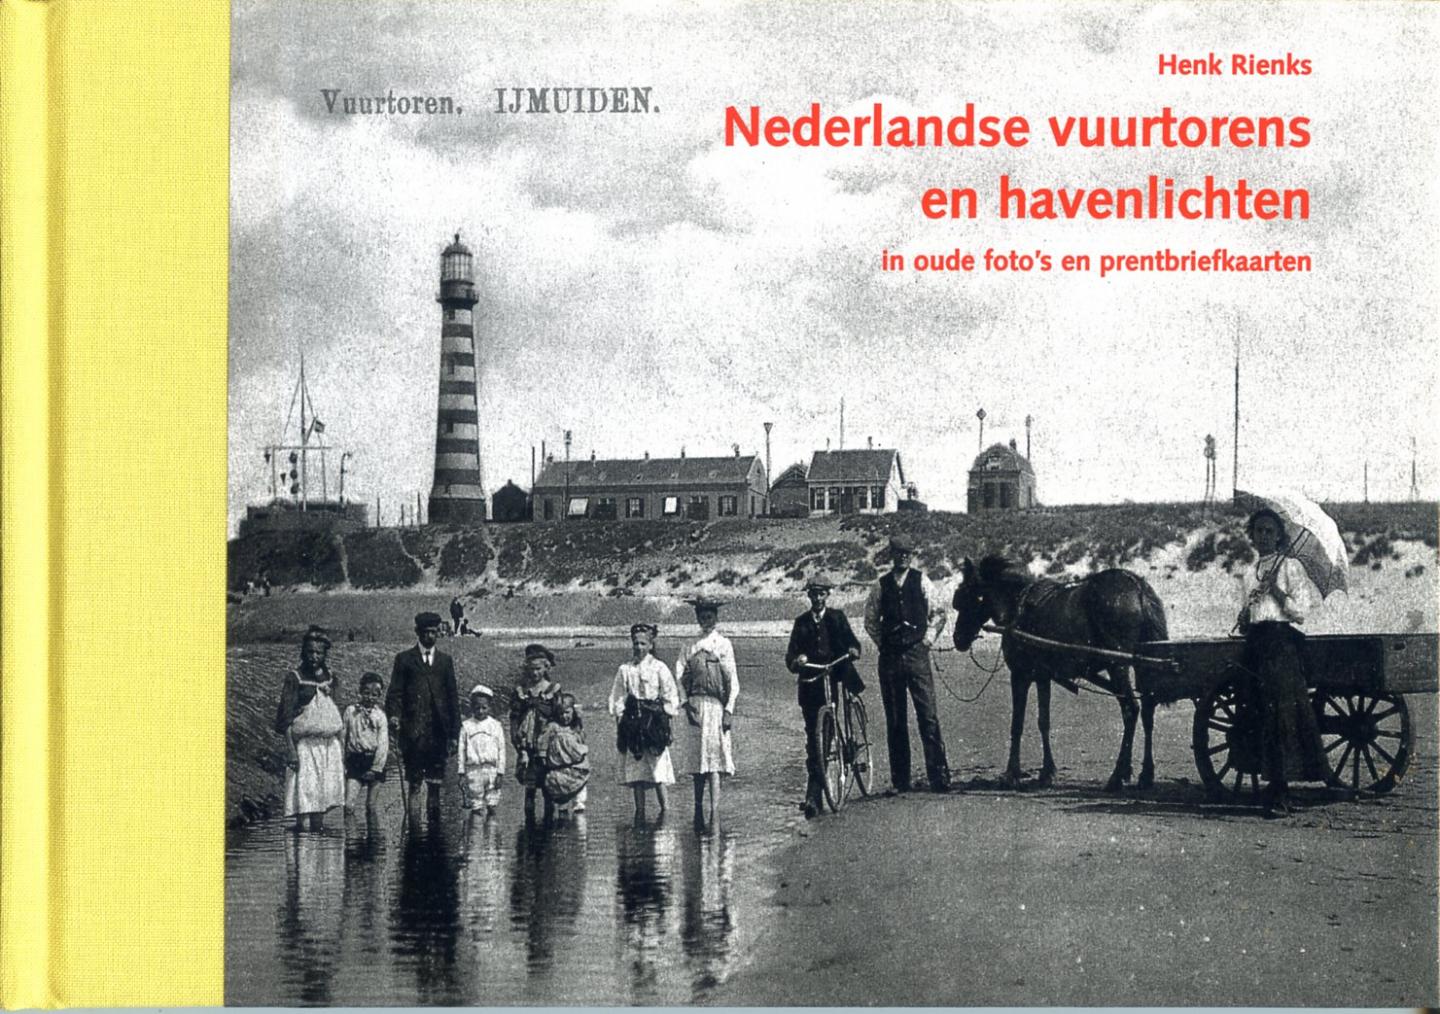 Rienks, H. - De Nederlandse vuurtoren in oude foto's en prentbriefkaarten / druk 1